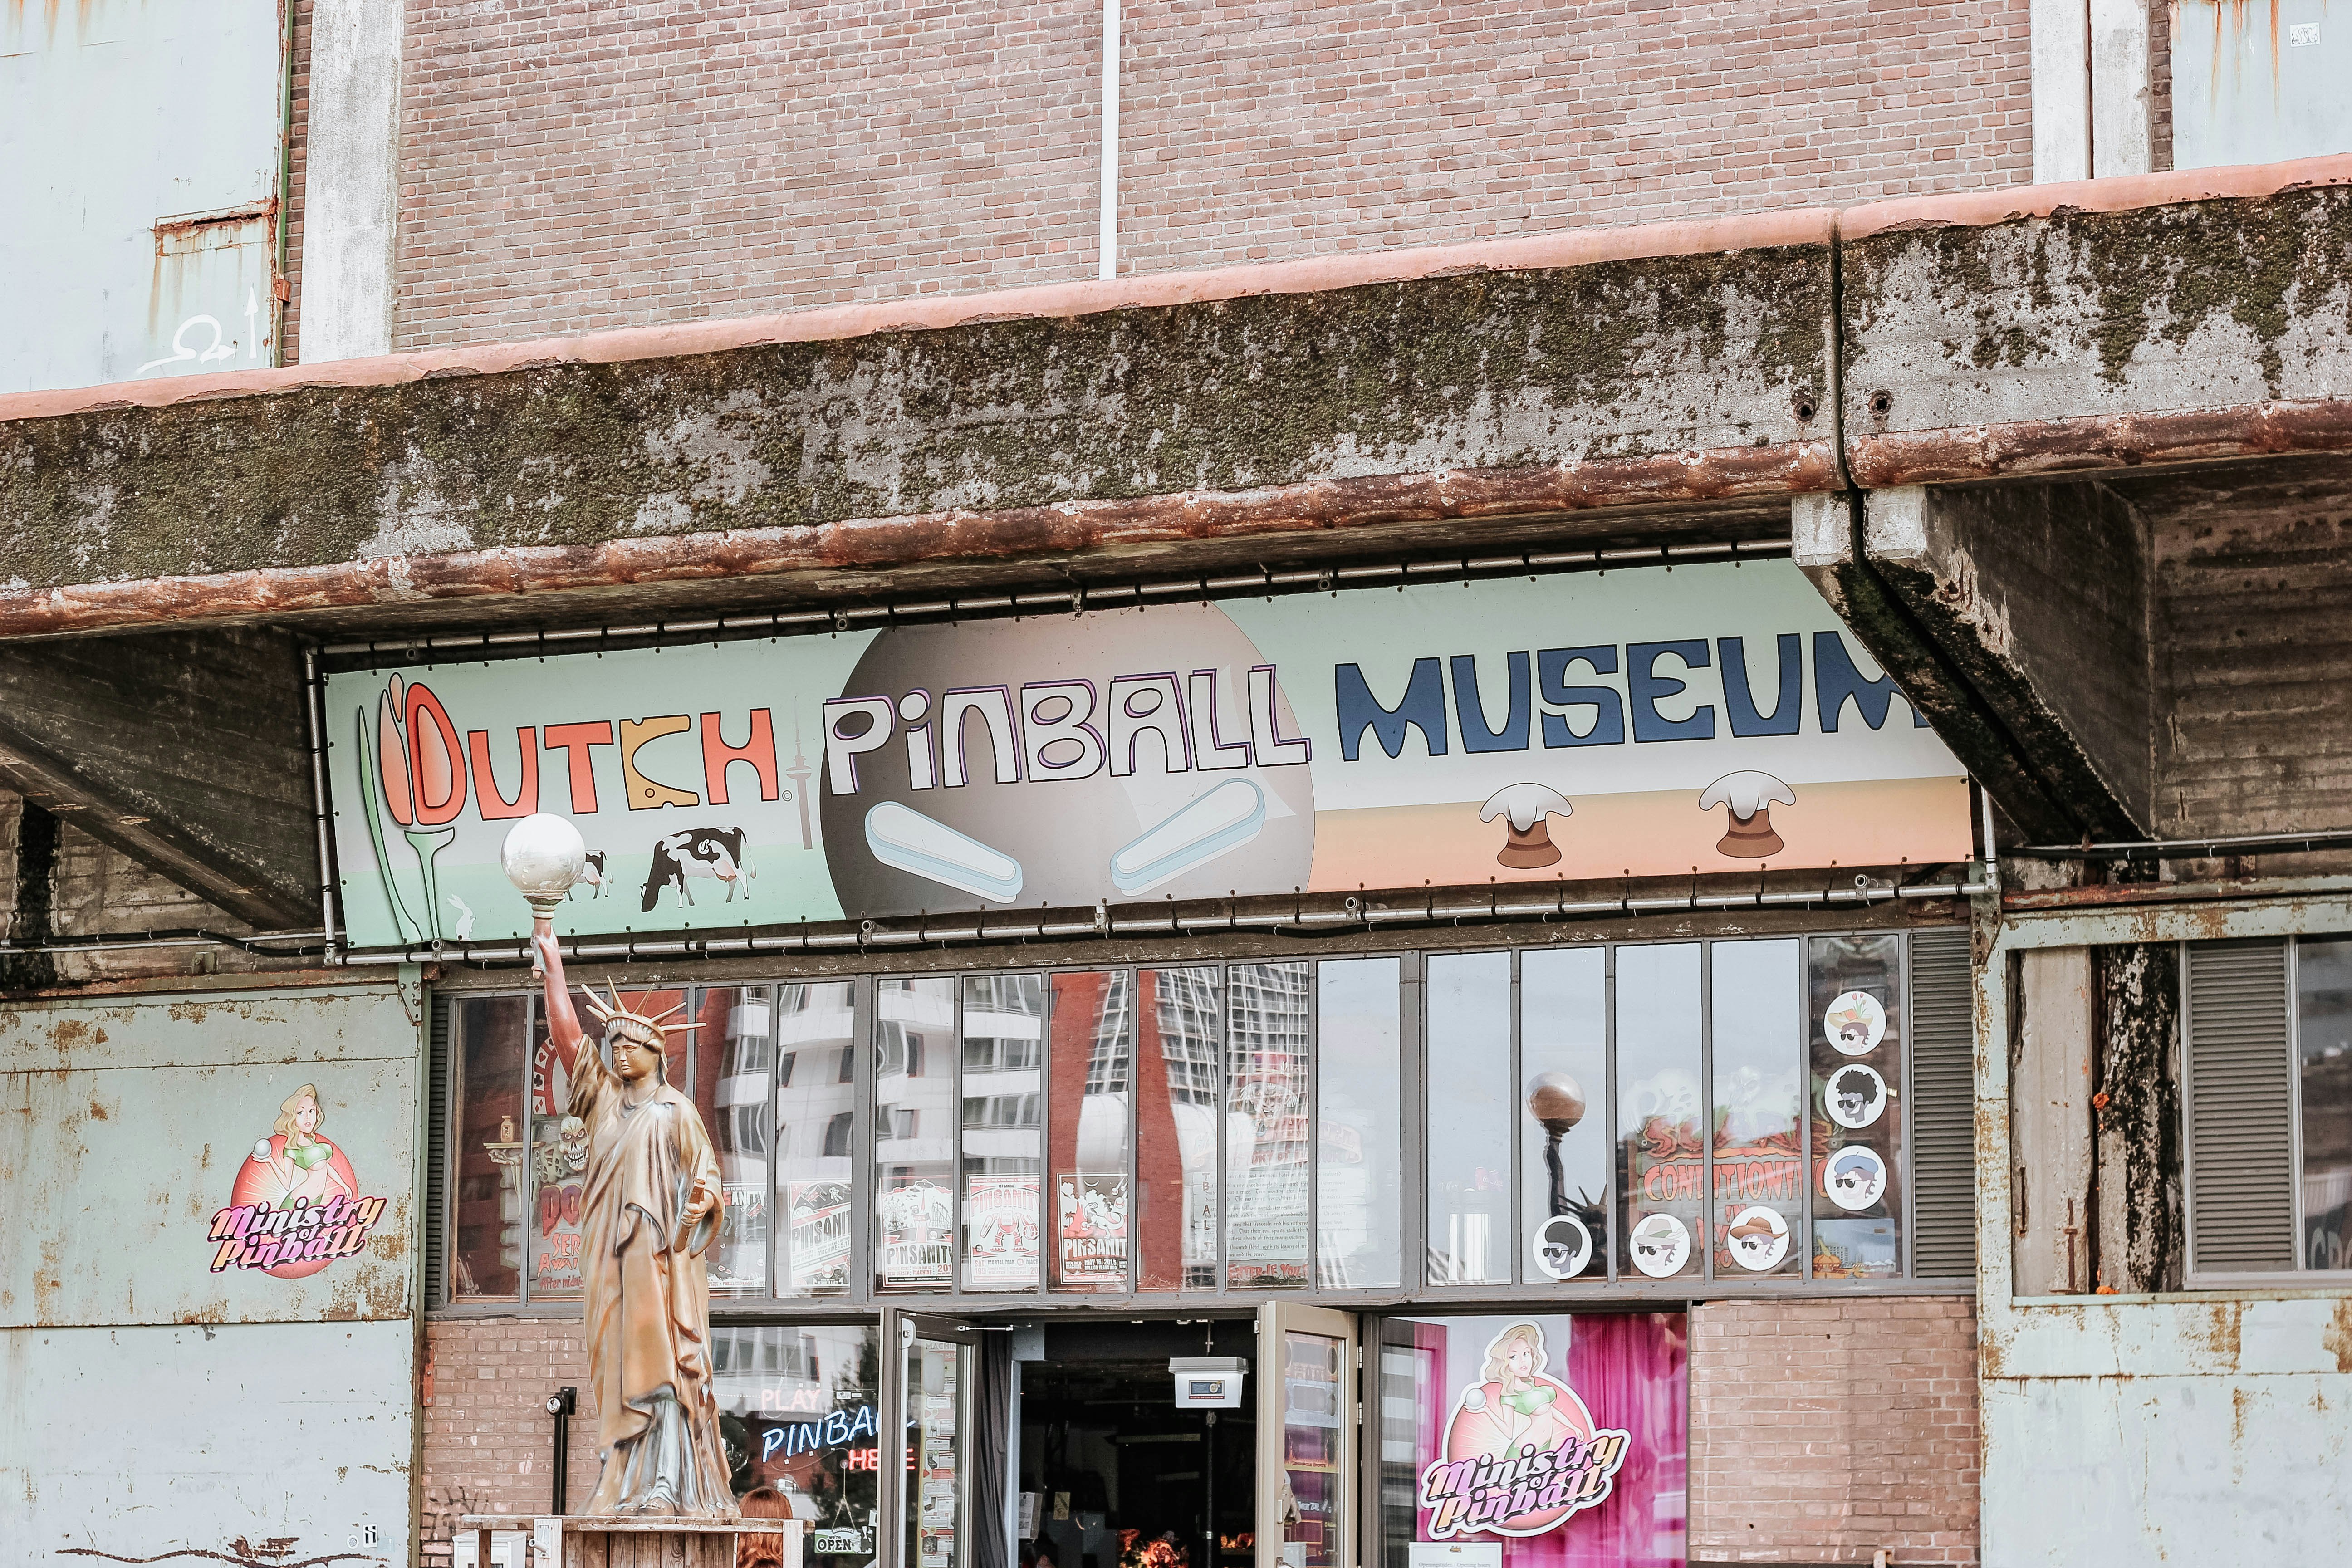 Dutch pinball museum sign